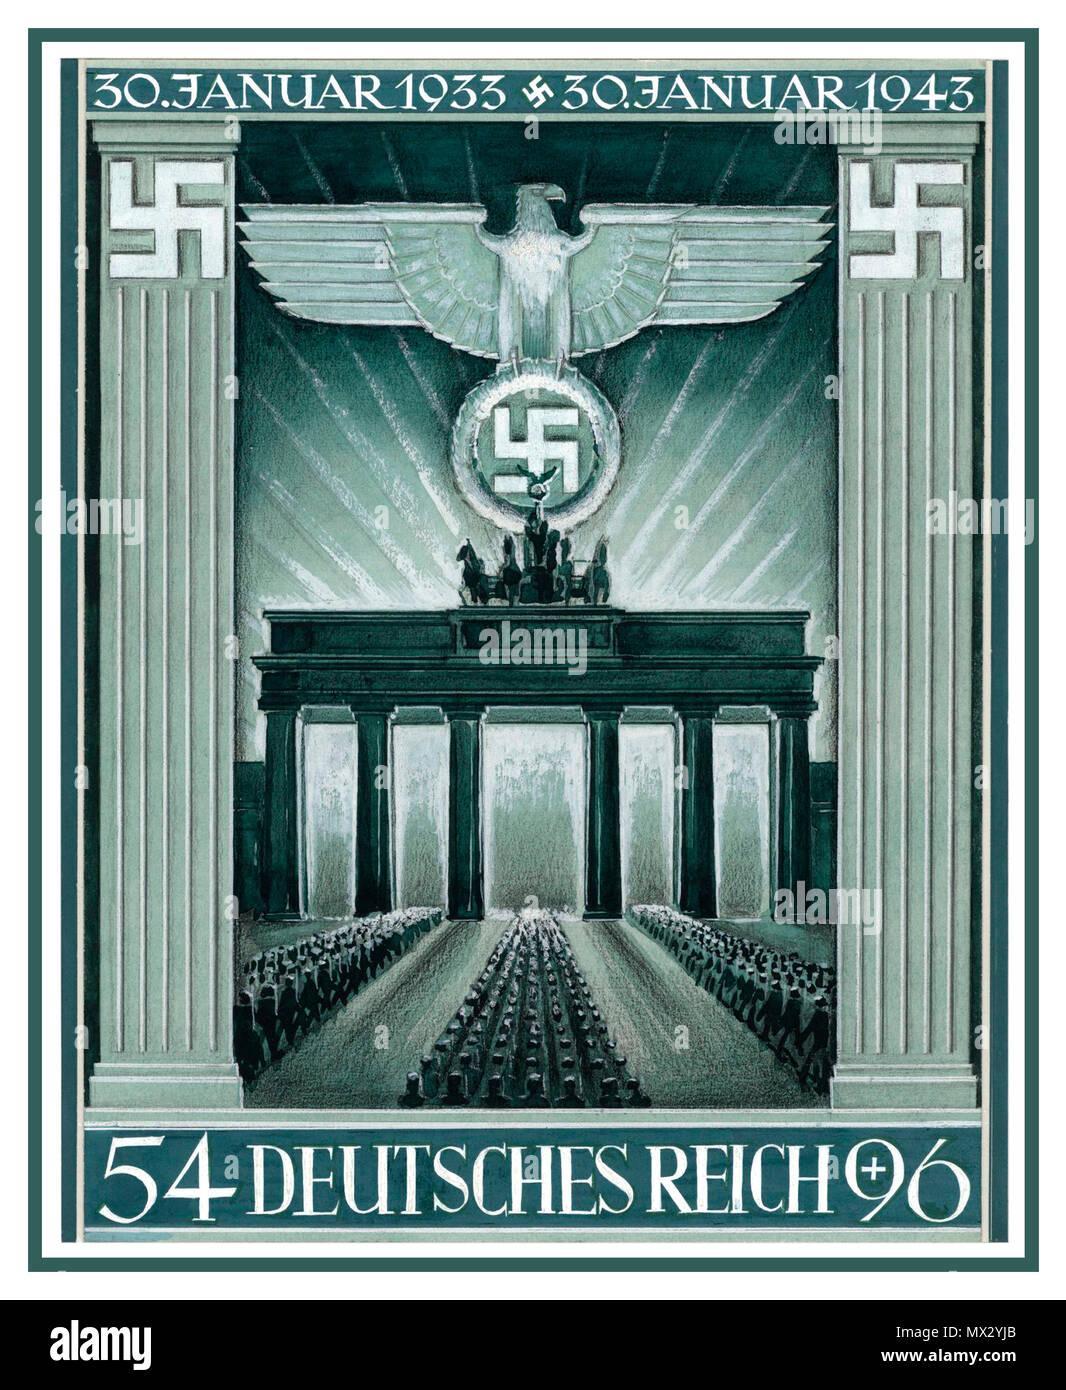 Vintage francobollo nazista opere d'arte propaganda porta di Brandeburgo Berlino Germania nazista decimo anniversario dell'acquisizione nazista da parte di Adolf Hitler 1933-1943 opere d'arte per il francobollo commemorativo Deutsches Reich primo giorno di emissione gennaio 1943 grafica di G. Klein Foto Stock